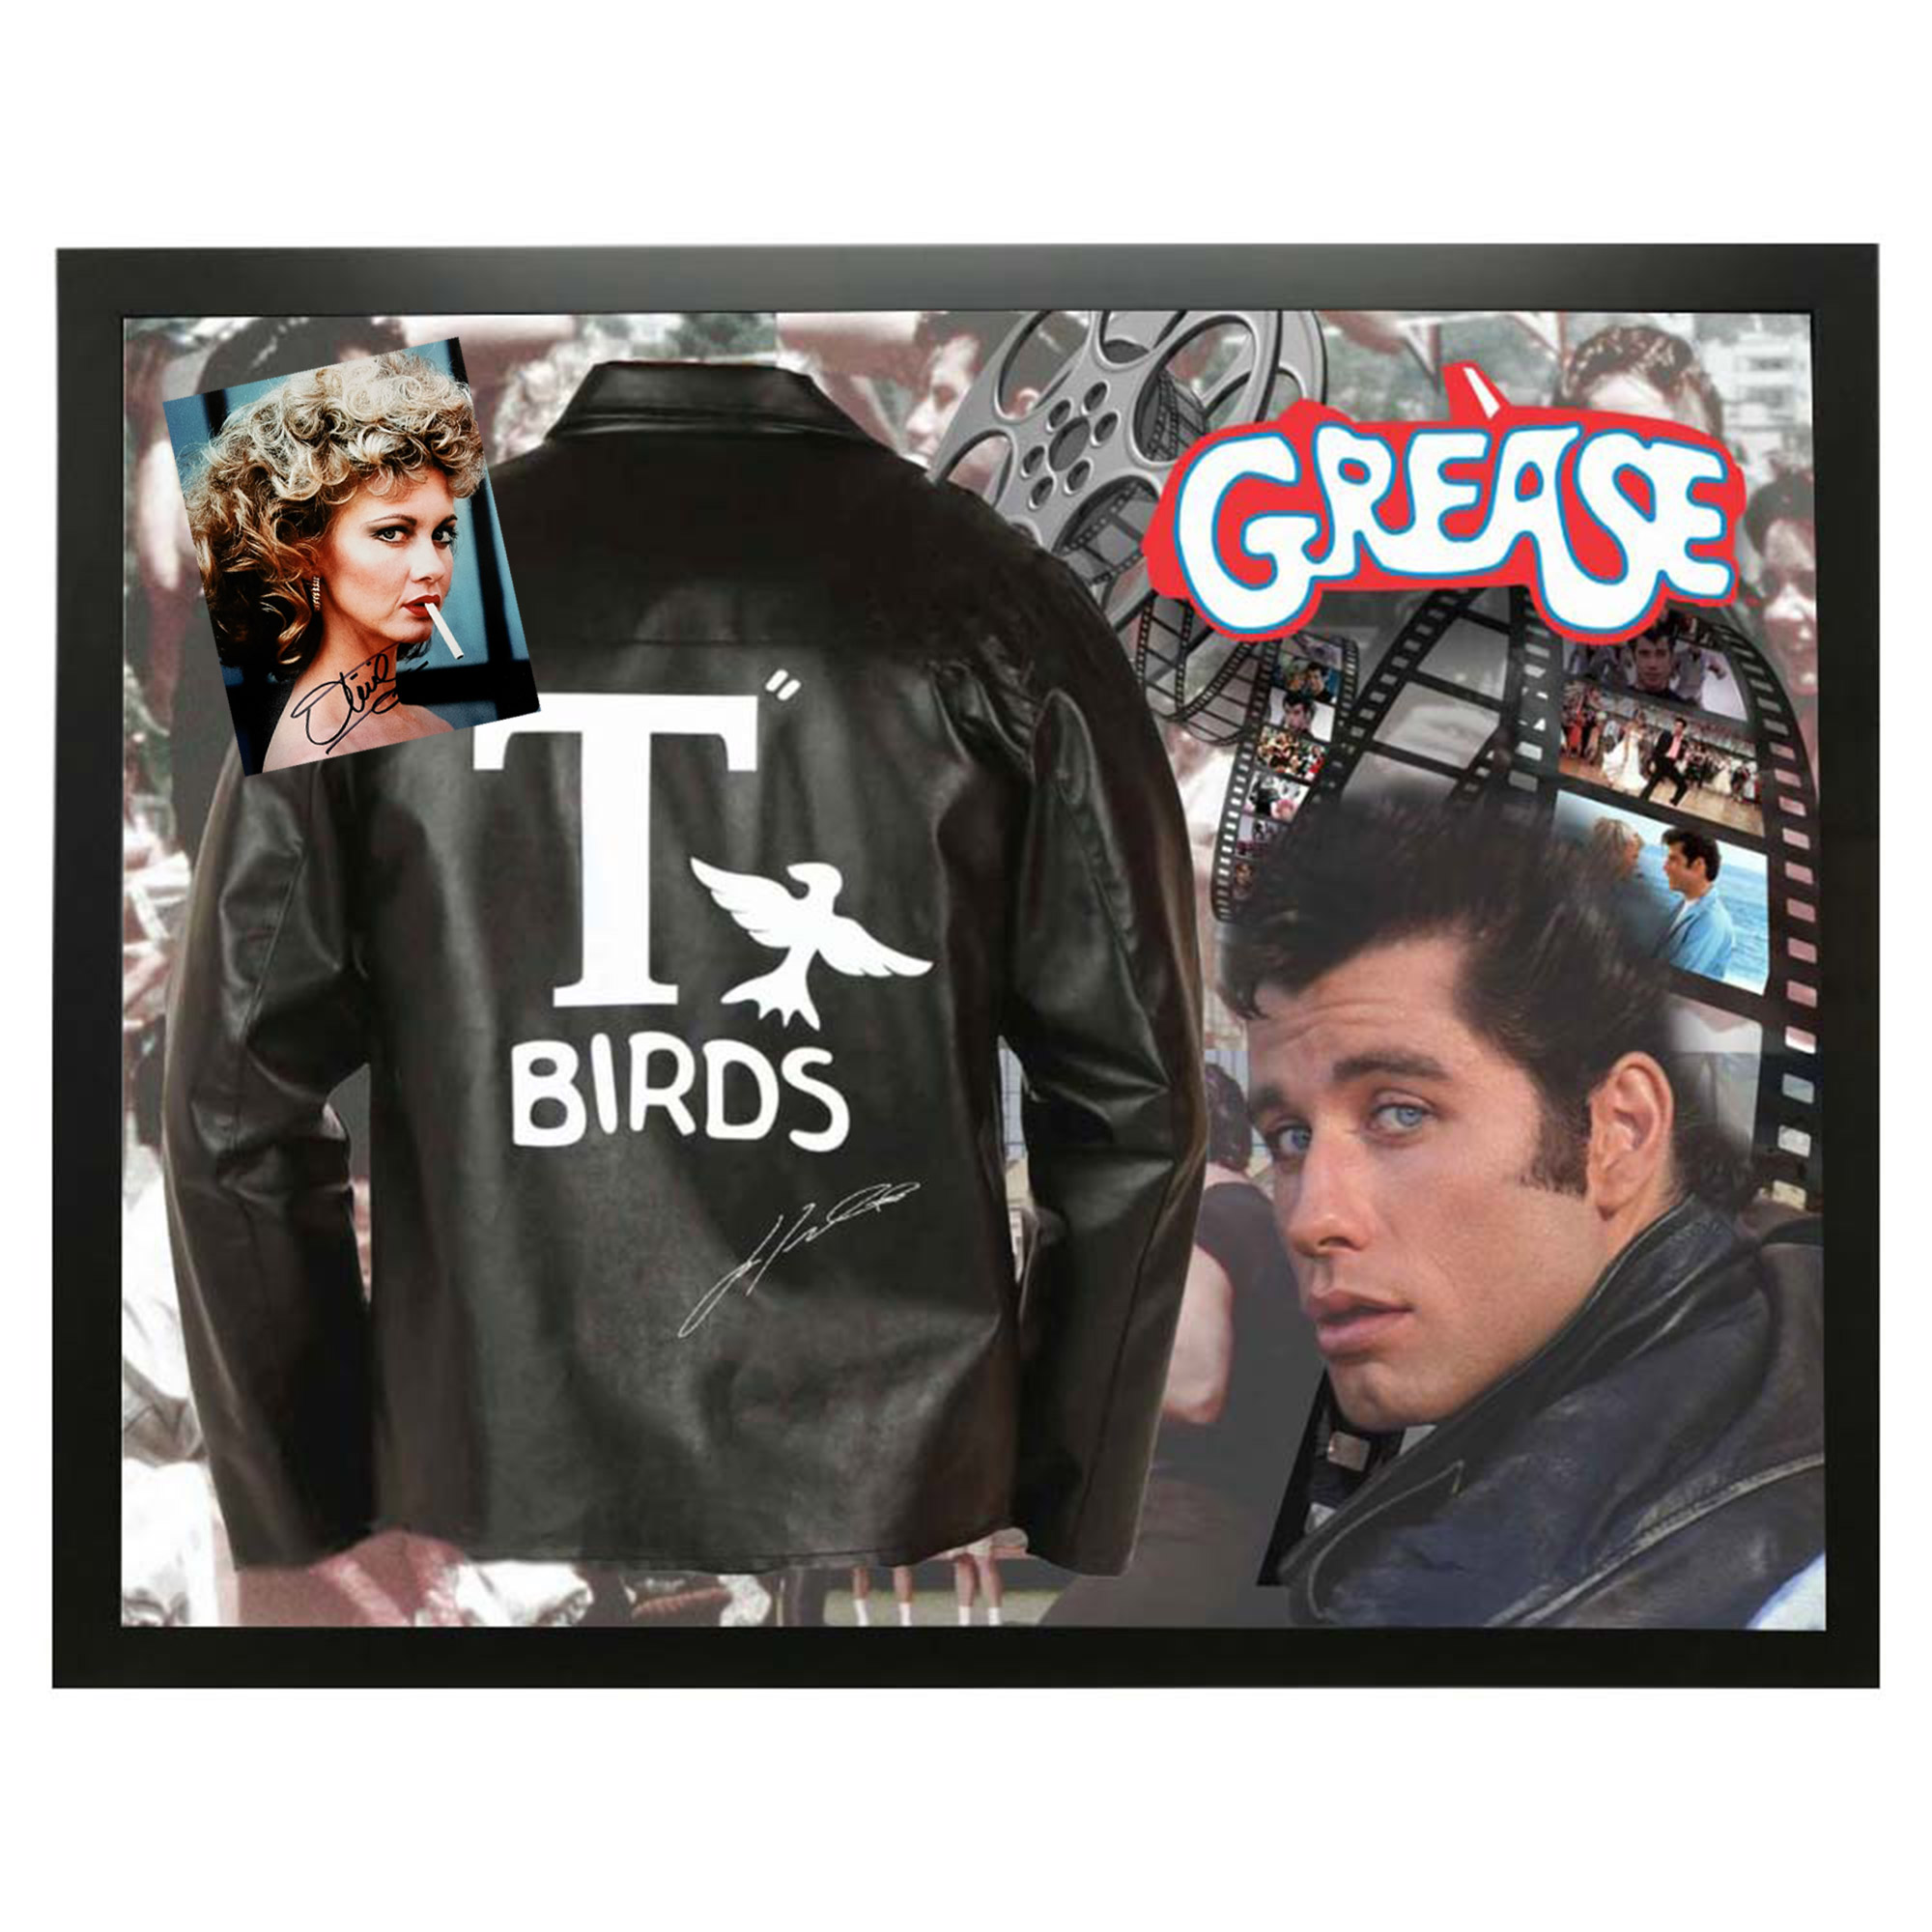 Grease – T-Birds John Travolta Signed Jacket & Olivia Newto...